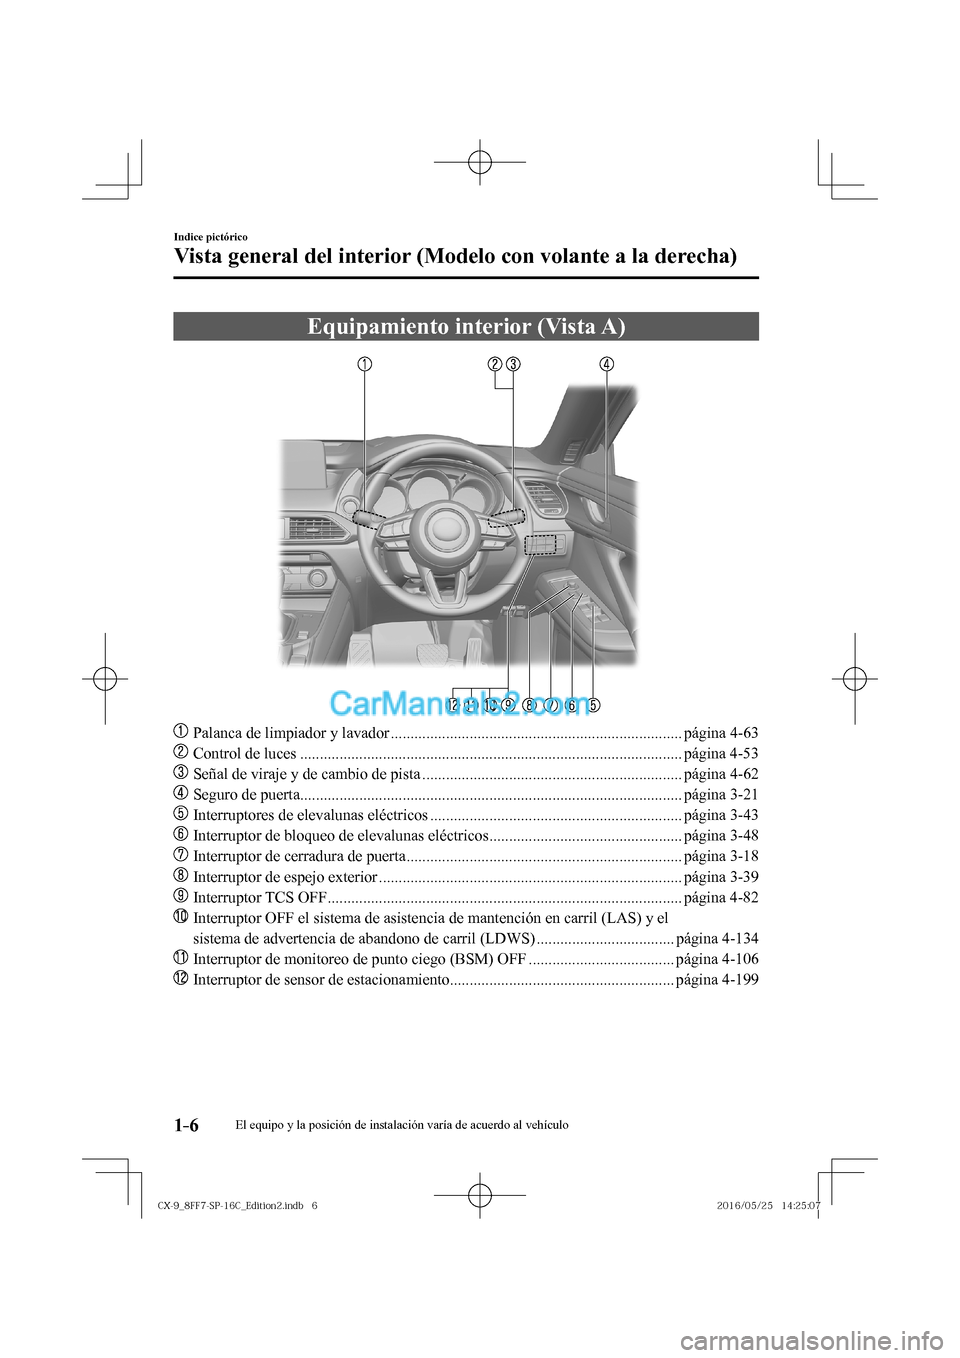 MAZDA MODEL CX-9 2017  Manual del propietario (in Spanish)  1–6
Indice pictórico
Vista general del interior (Modelo con volante a la derecha)
      Equipamiento  interior  (Vista  A)
    
���
  Palanca de limpiador y lavador .............................